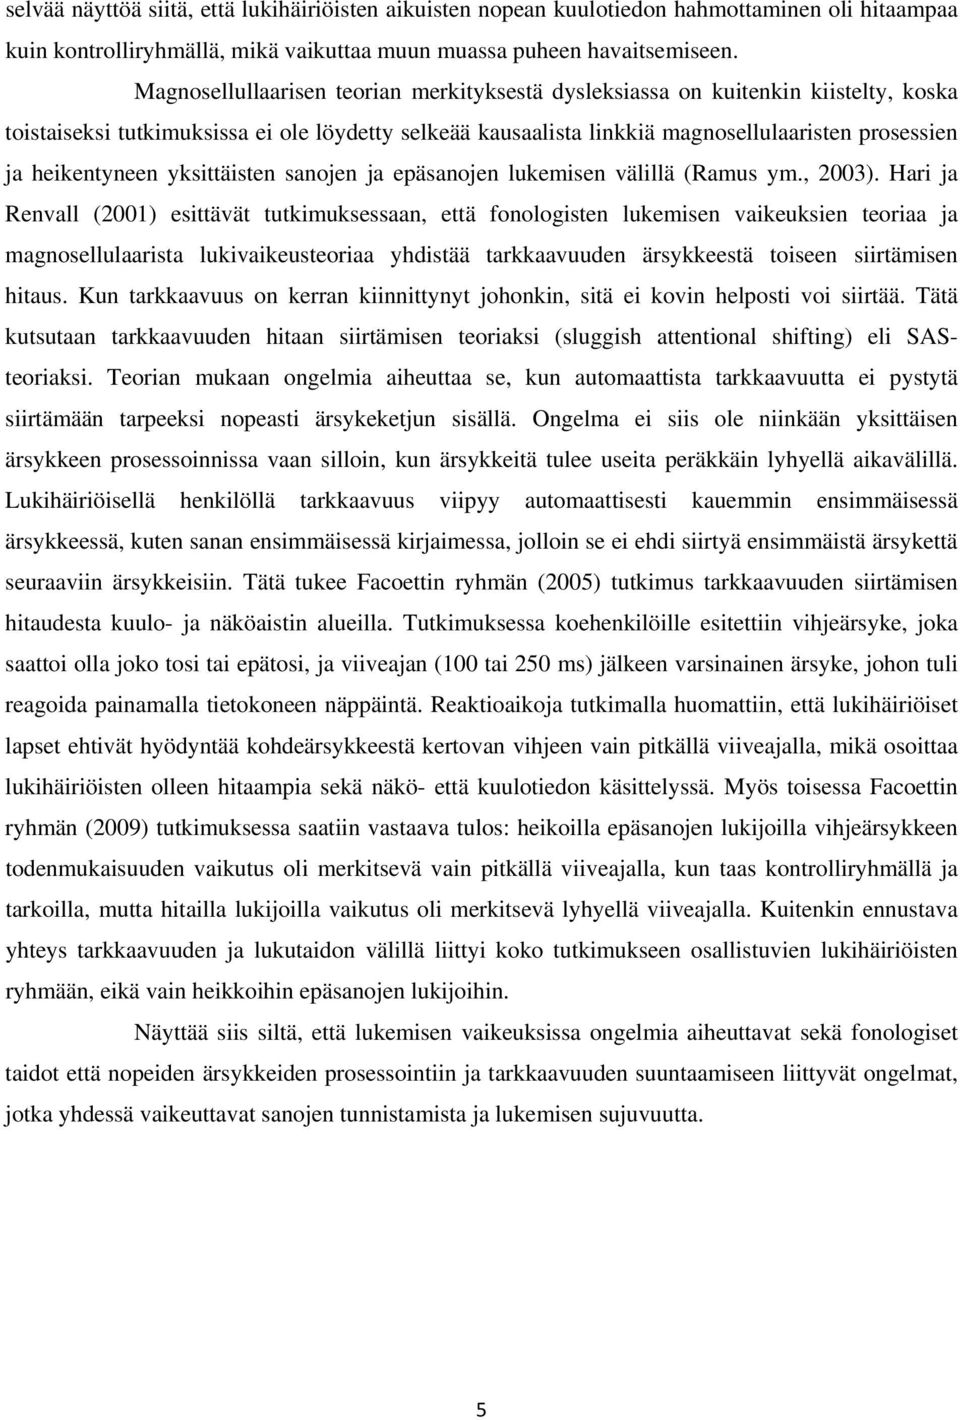 heikentyneen yksittäisten sanojen ja epäsanojen lukemisen välillä (Ramus ym., 2003).